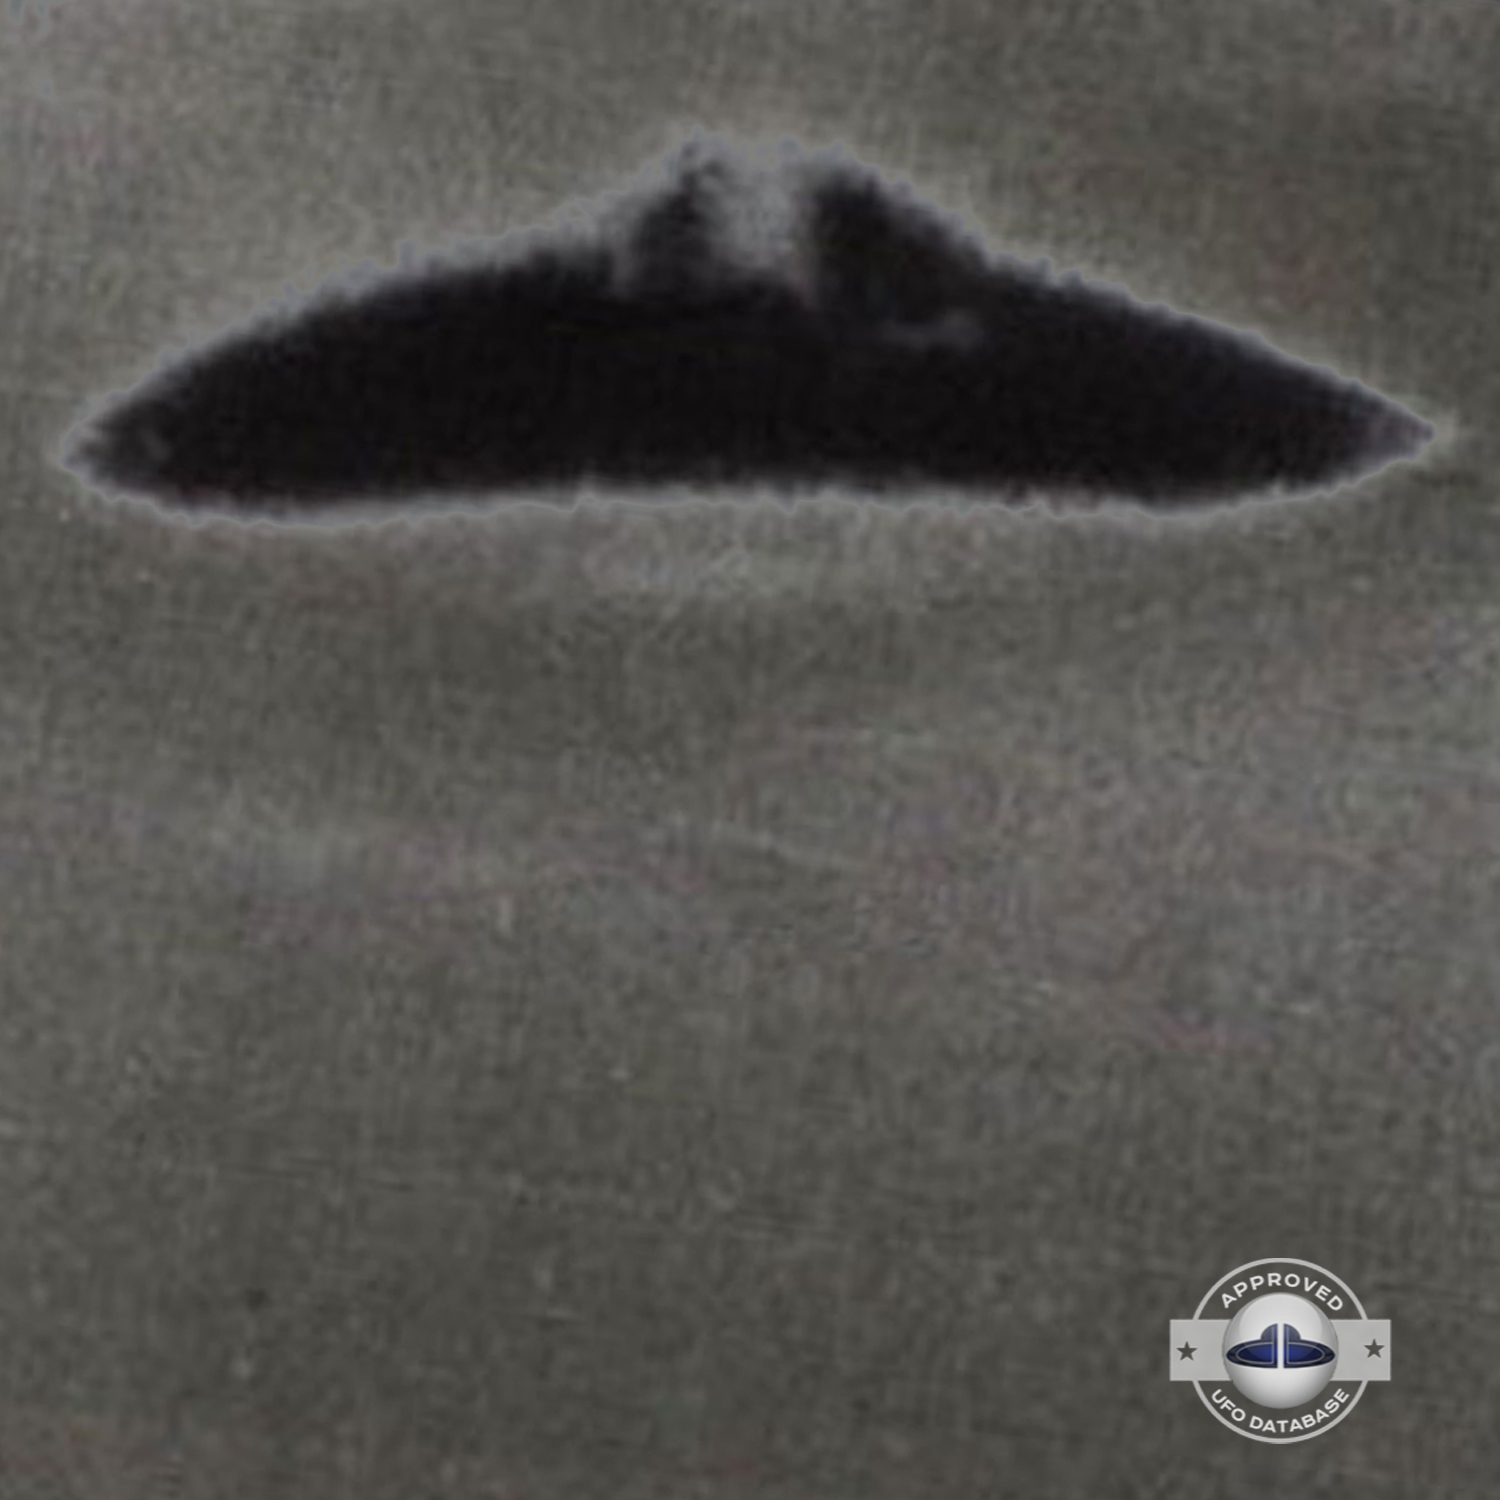 Russia UFO sighting| Dalnegorsk, Primorsky Krai UFO picture | 1989 UFO Picture #141-5